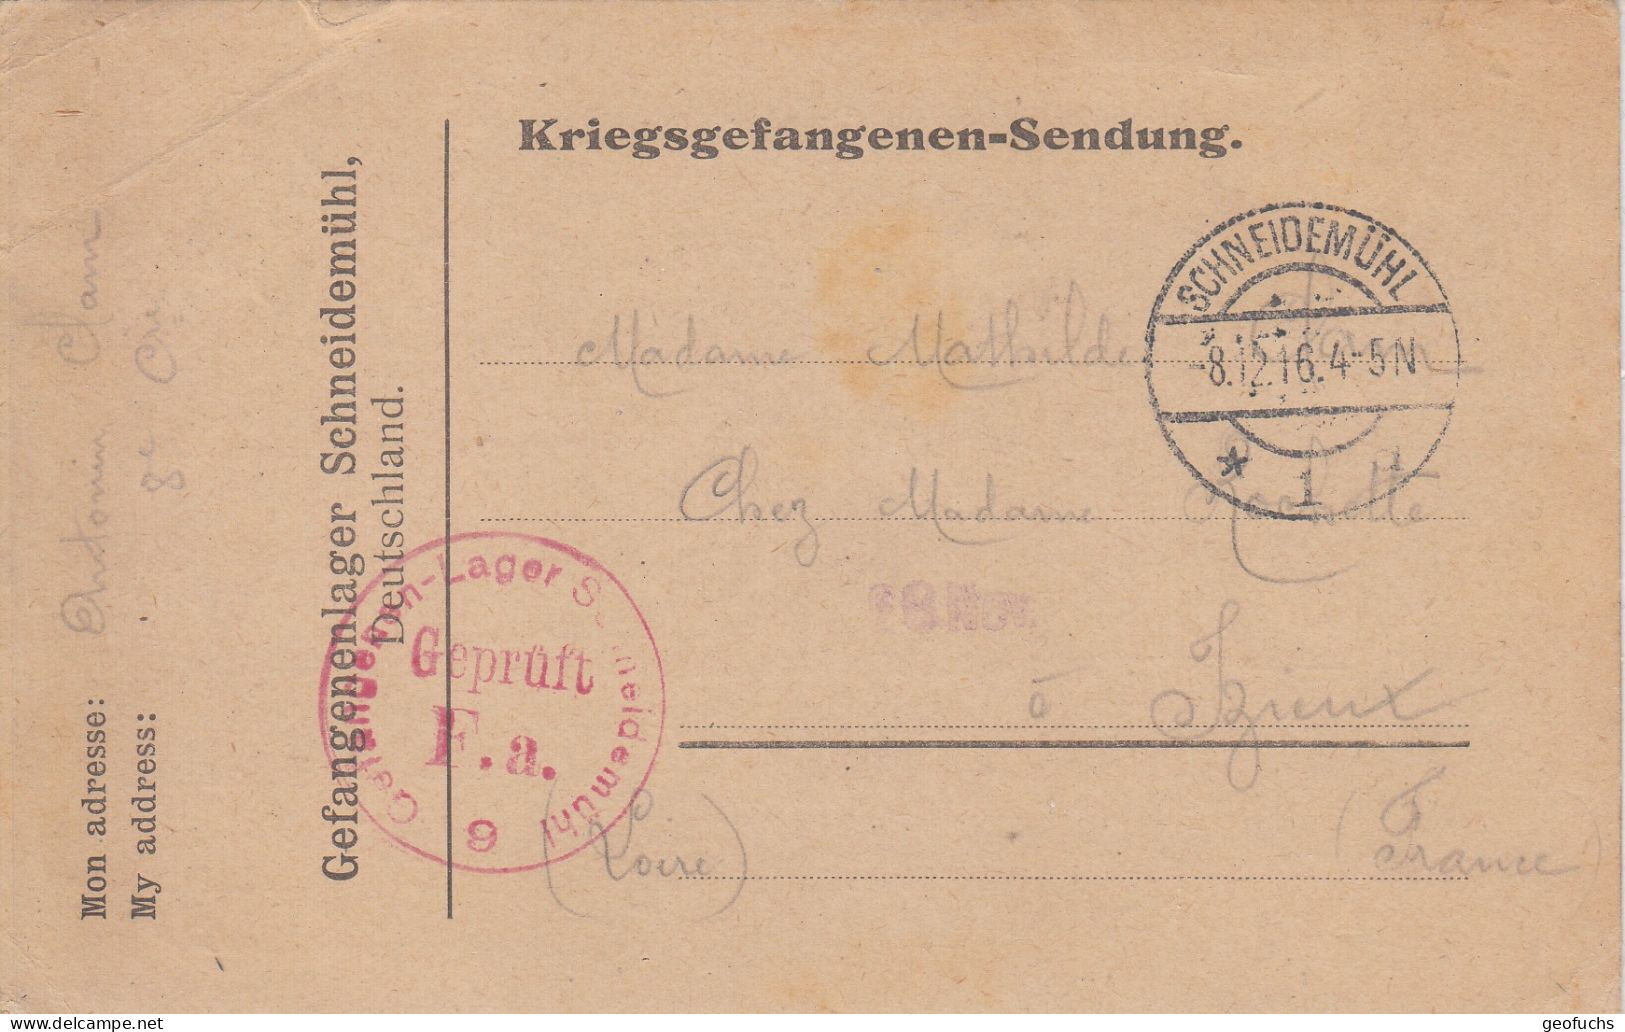 Carte Allemande En Franchise Pour Prisonnier Français, Camp De SCHEIDEMÜHL (Prusse),  écrite 8.12.16, Censurée - WW I